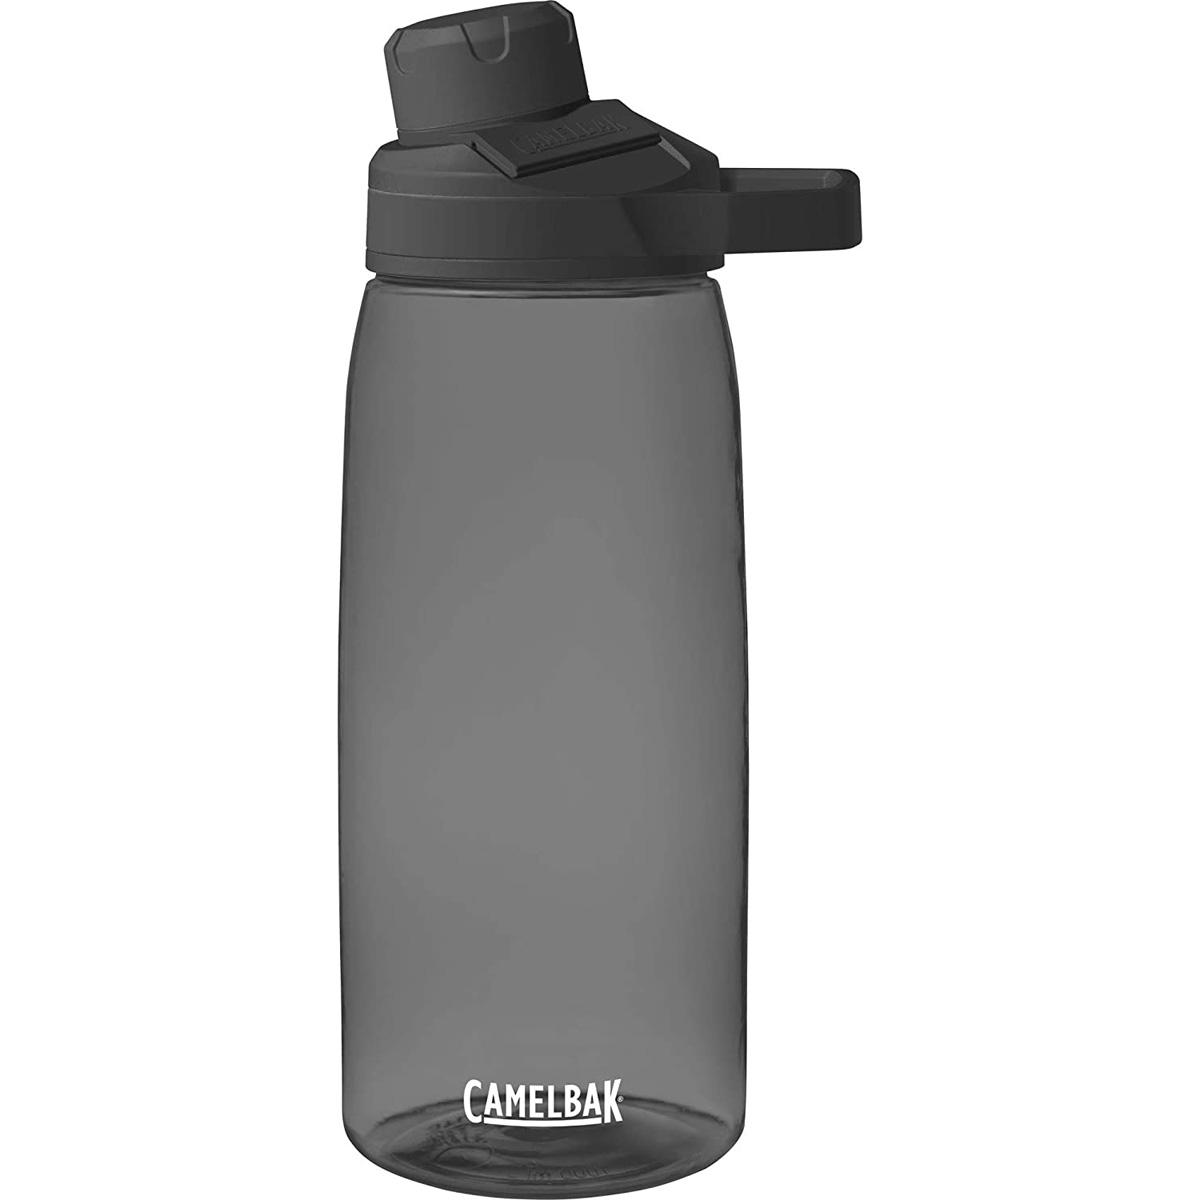 50oz CamelBak Chute Mag Water Bottle for $7.93